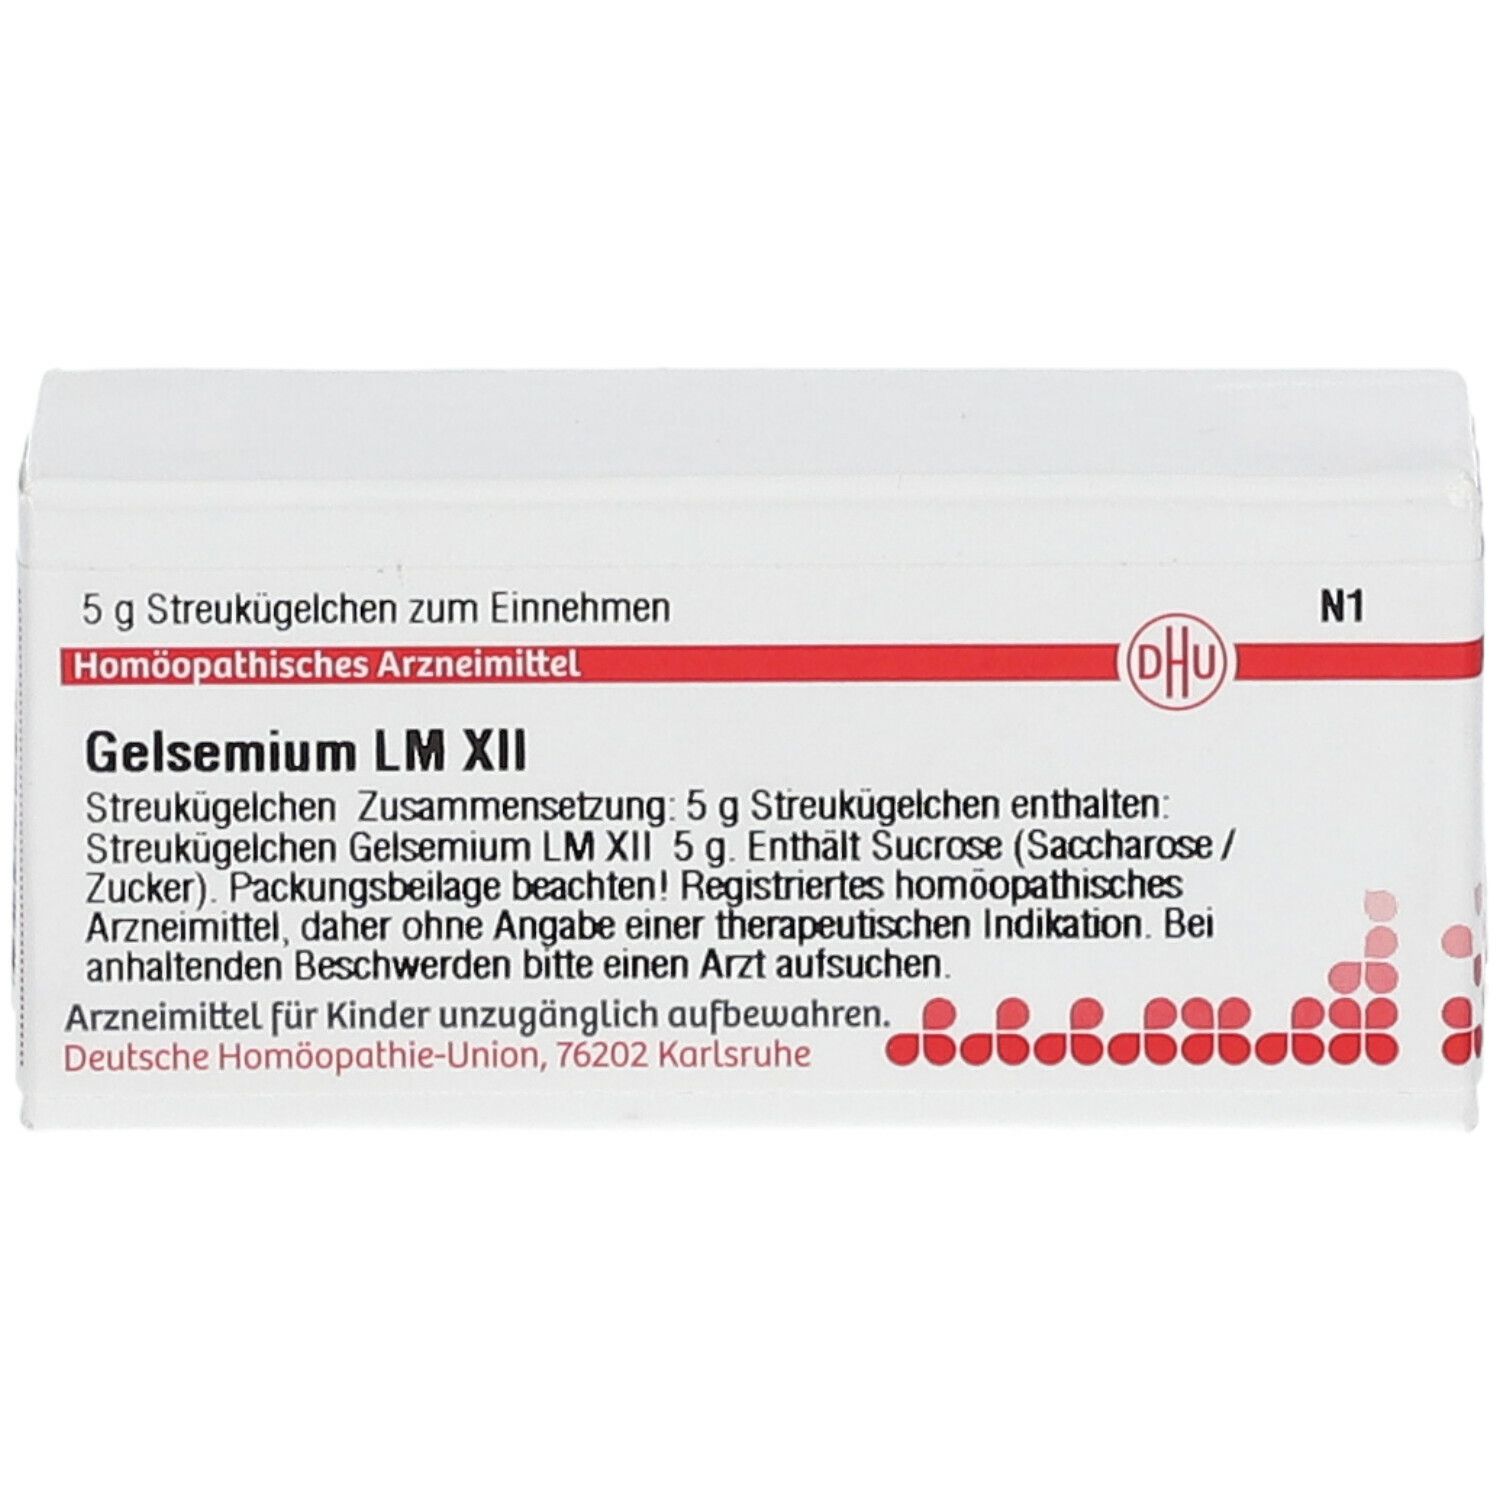 DHU Gelsemium Lm XII